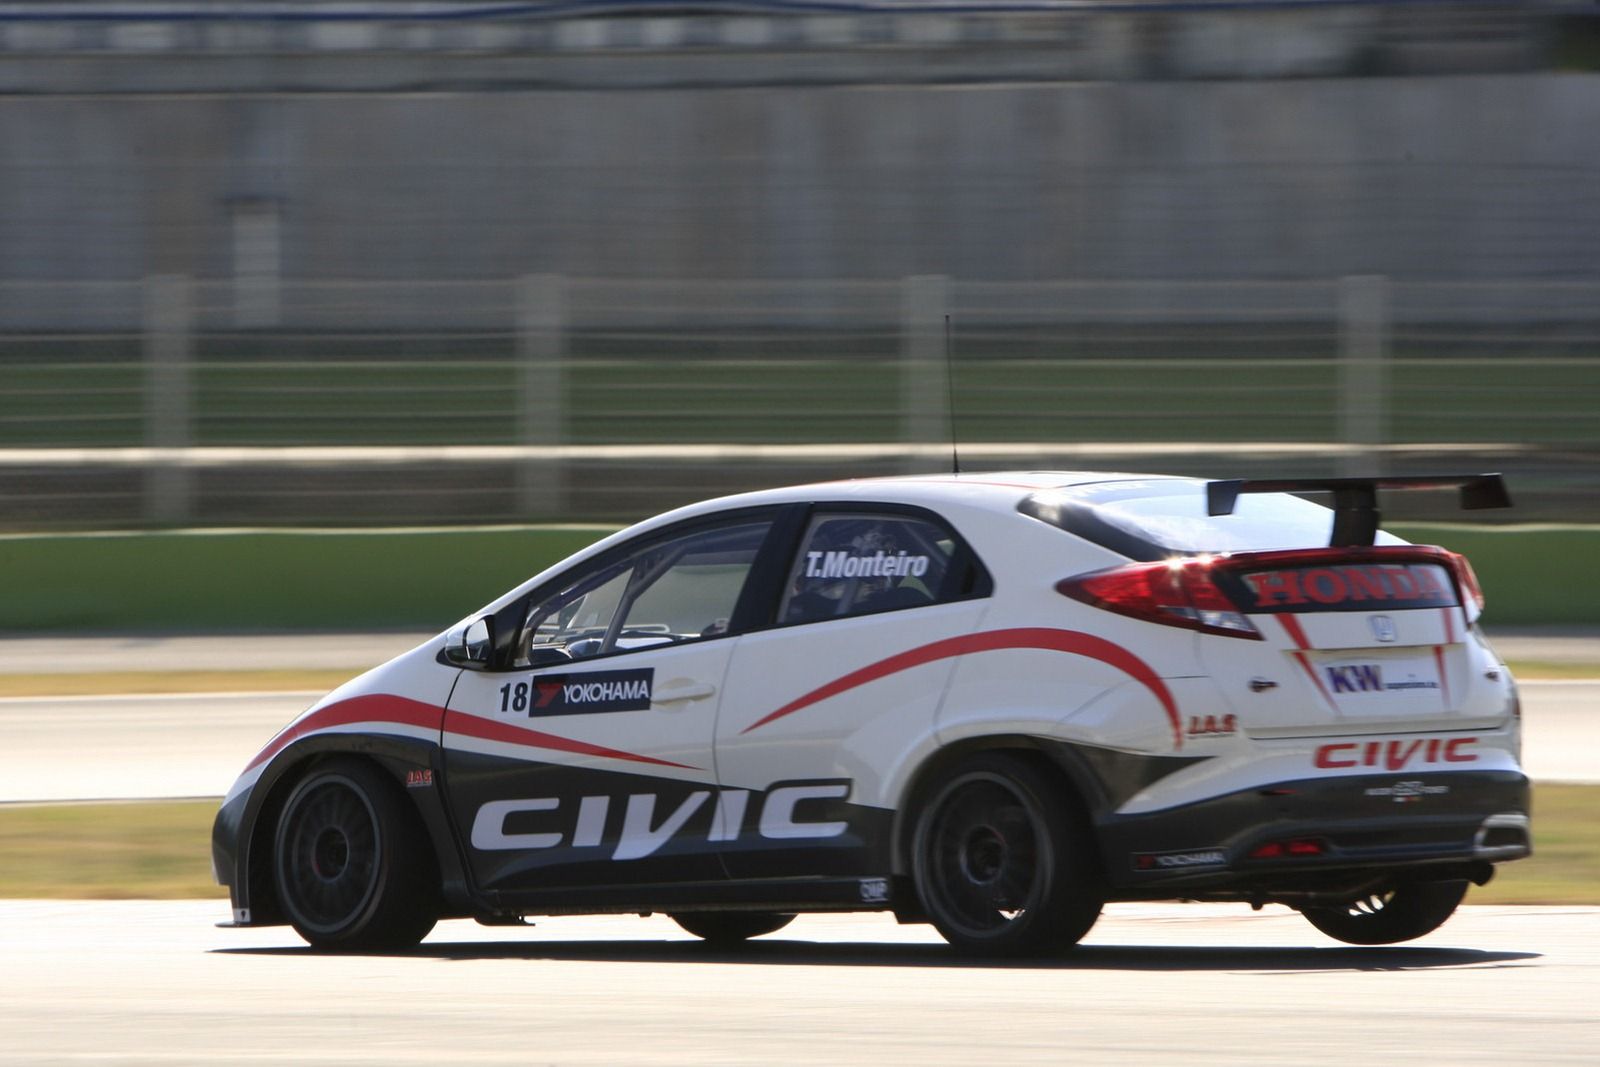 2013 Honda Civic WTCC Race Car